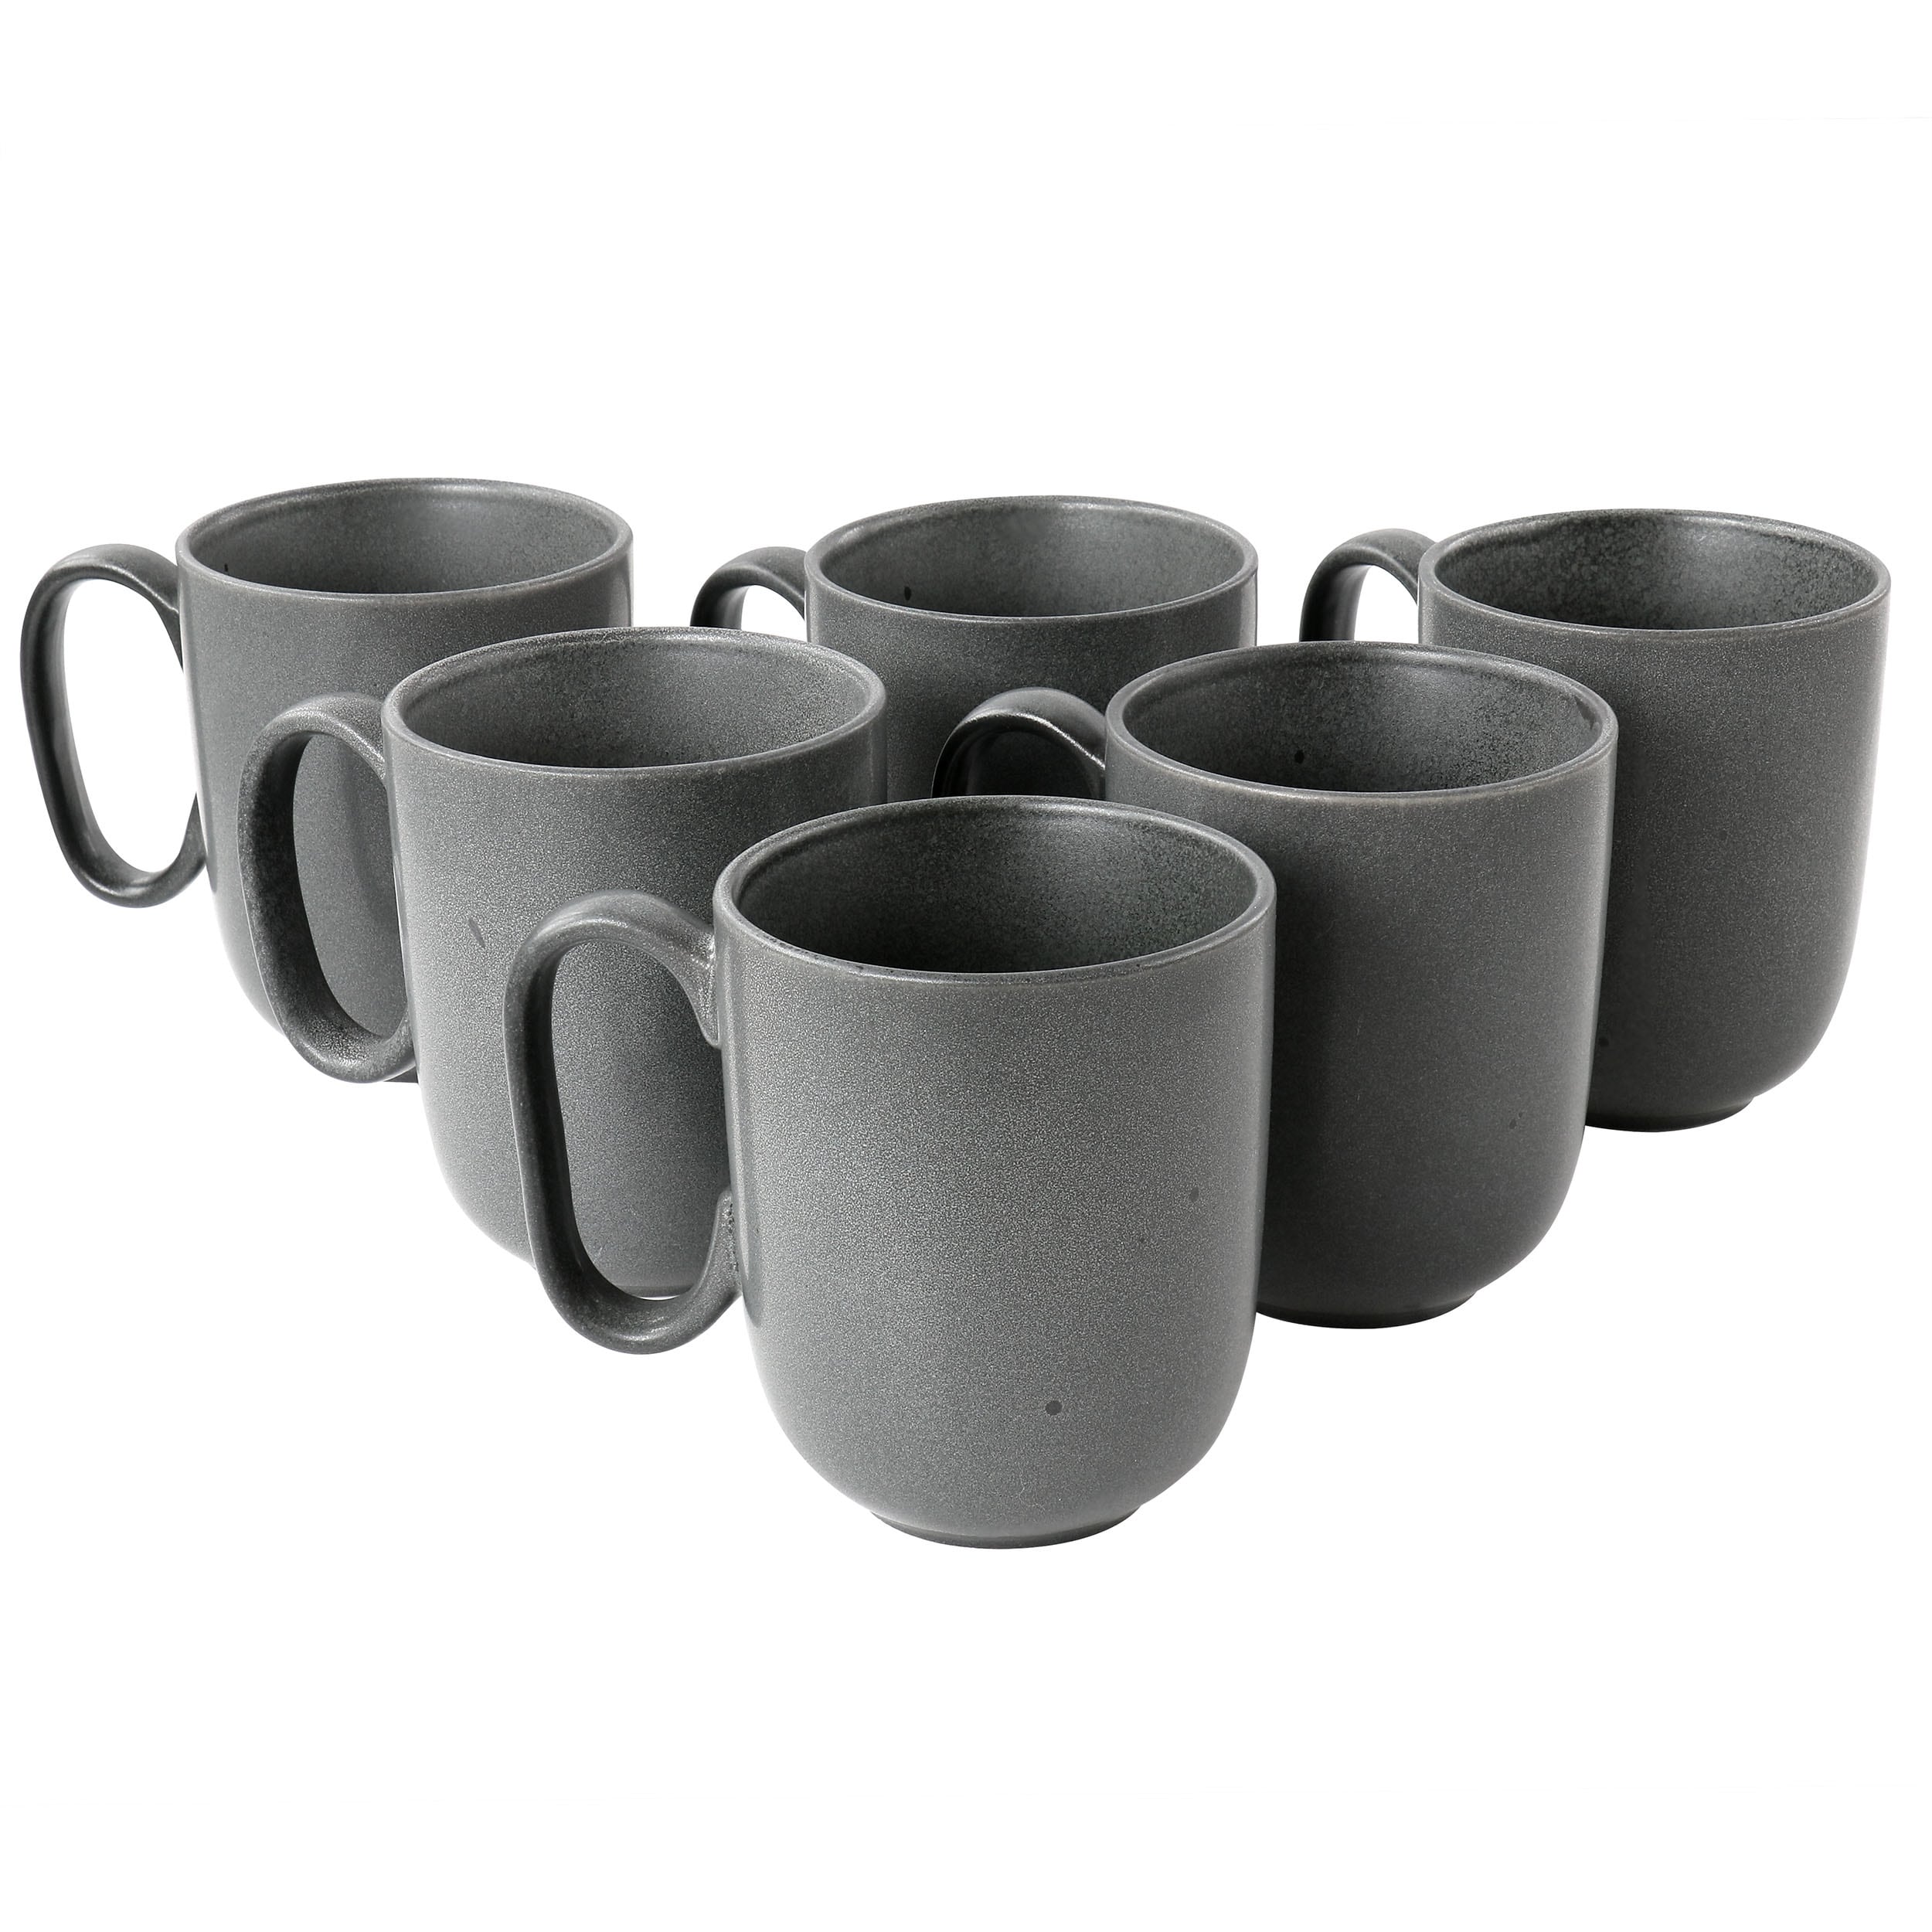 6 Piece 15oz Reactive Glaze Stoneware Mug Set in Truffle Grey